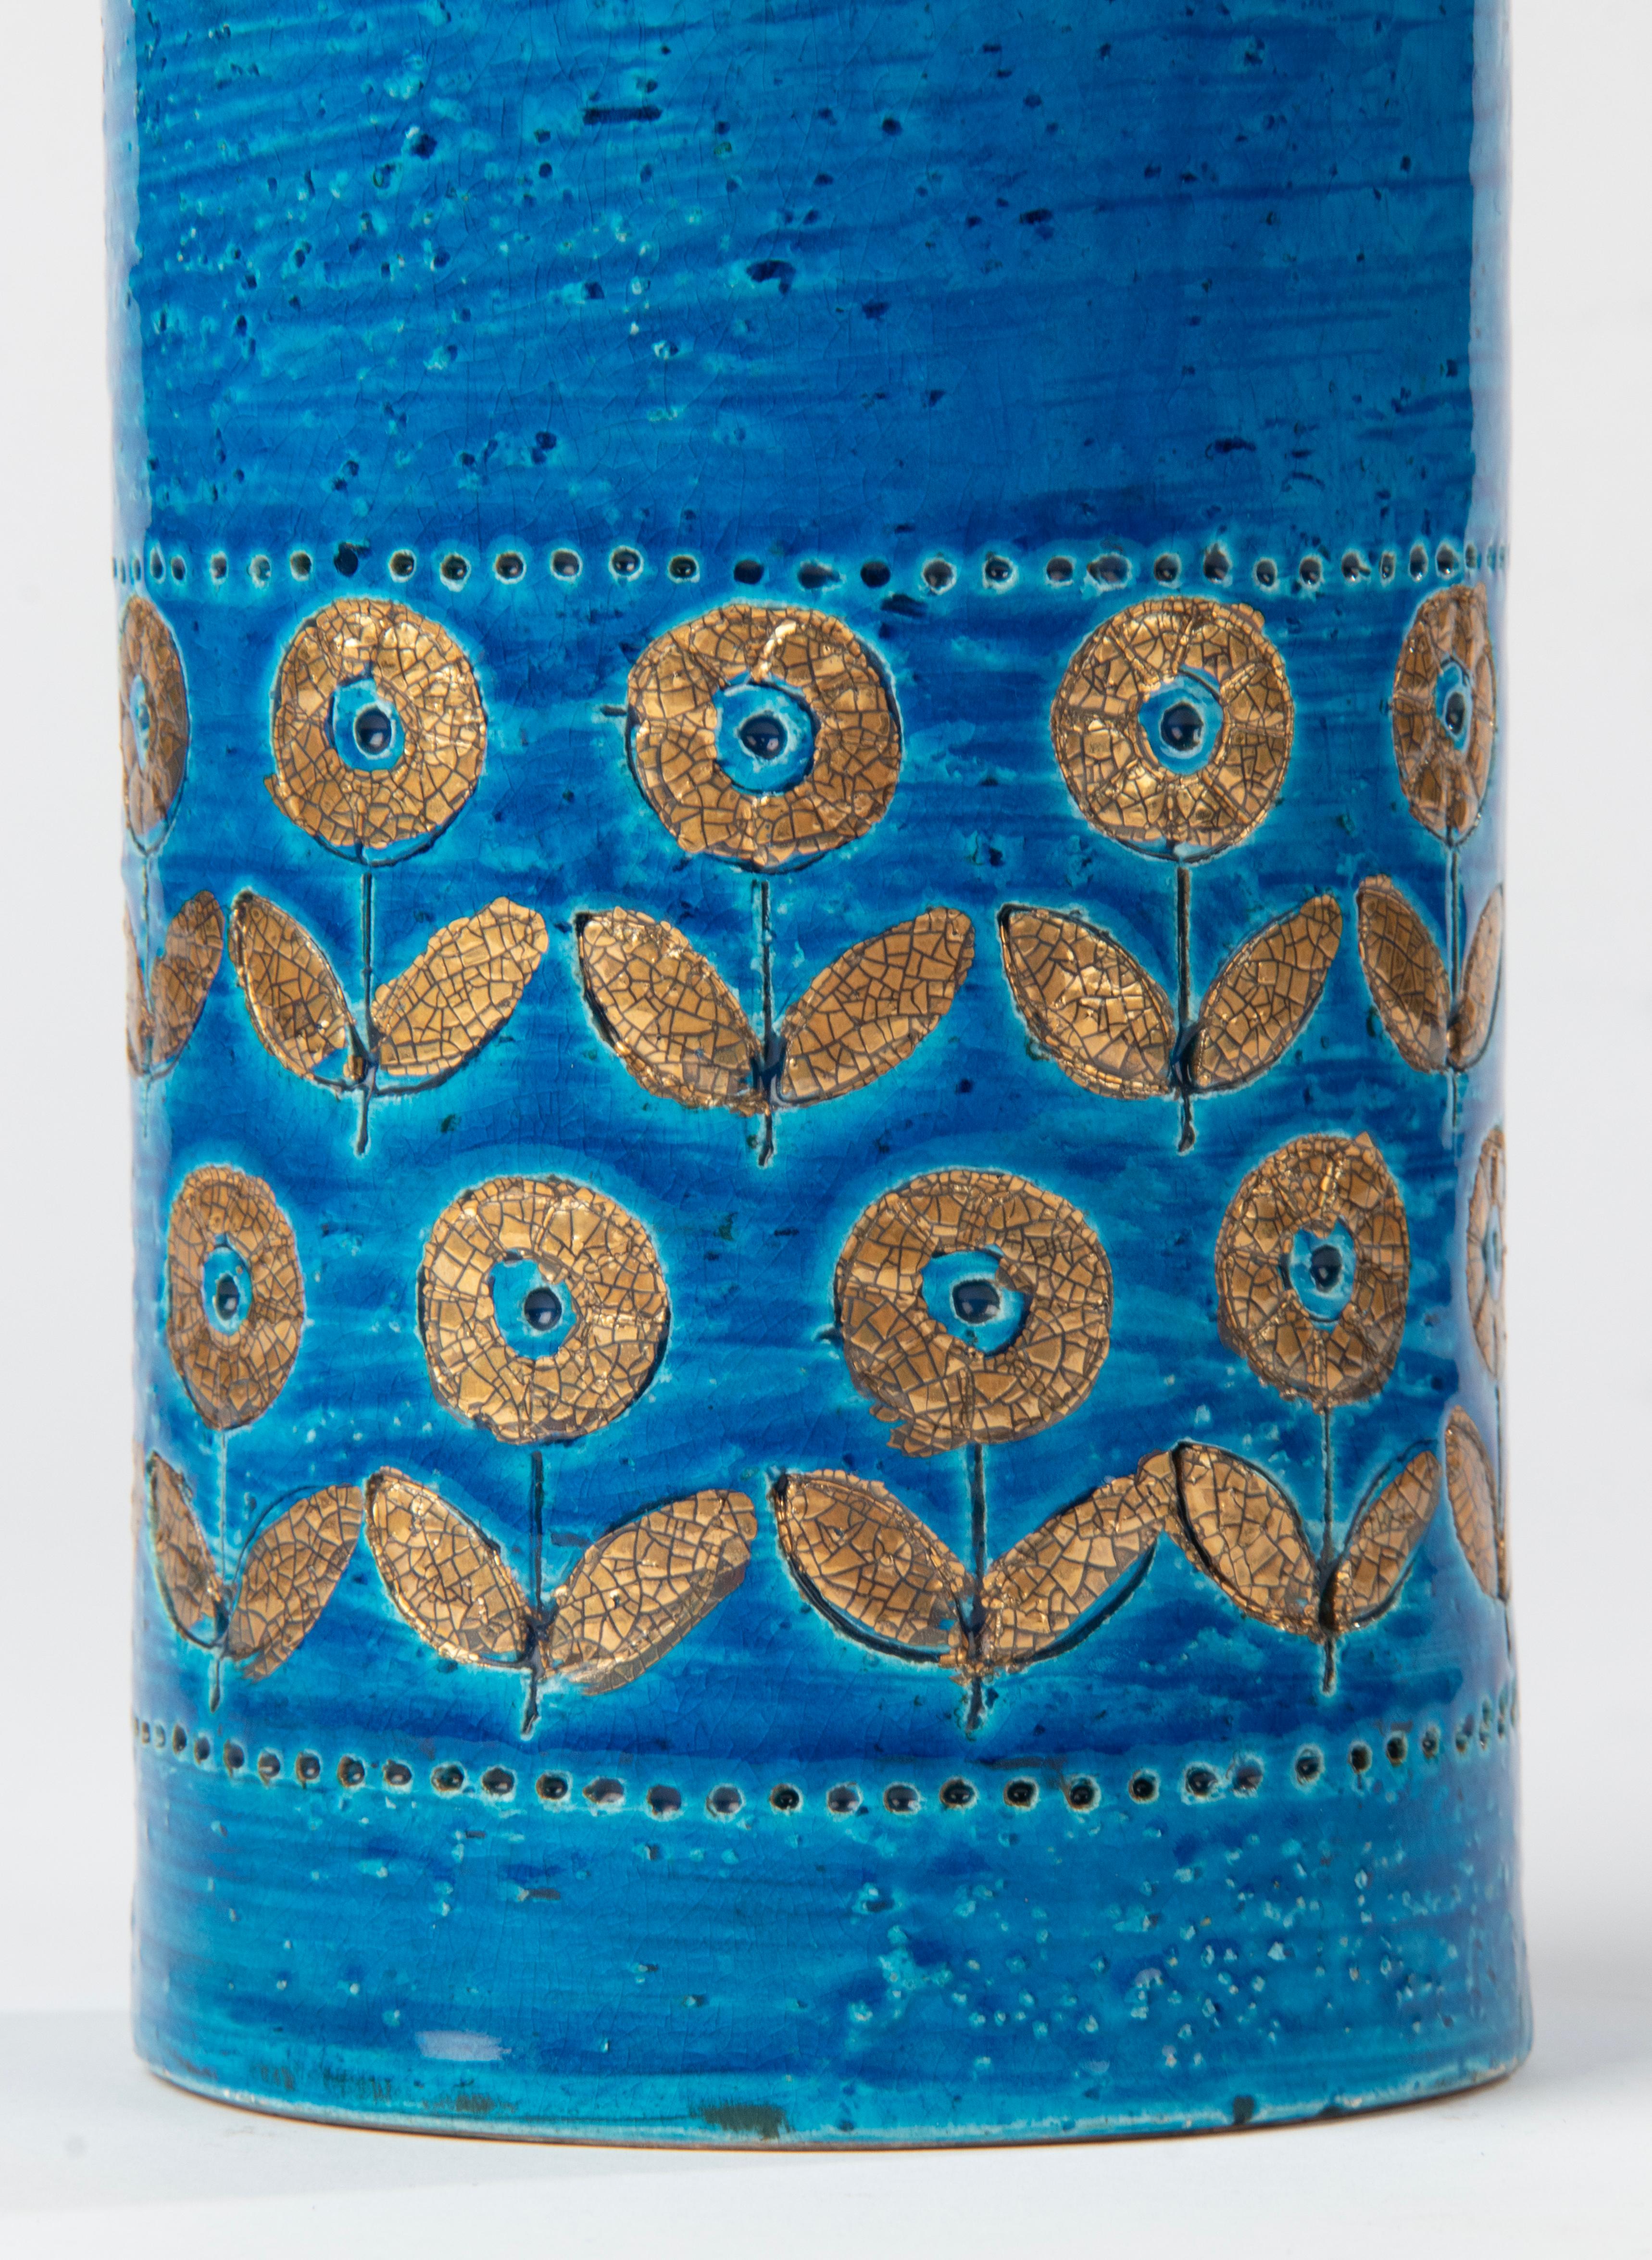 Un beau vase en céramique, attribué au fabricant italien Bitossi. Le vase n'est pas marqué. La couleur bleue, la forme et la structure sont caractéristiques de Bistossi.
Le vase est en bon état. Il n'y a pas d'ébréchures ni de lignes de démarcation.